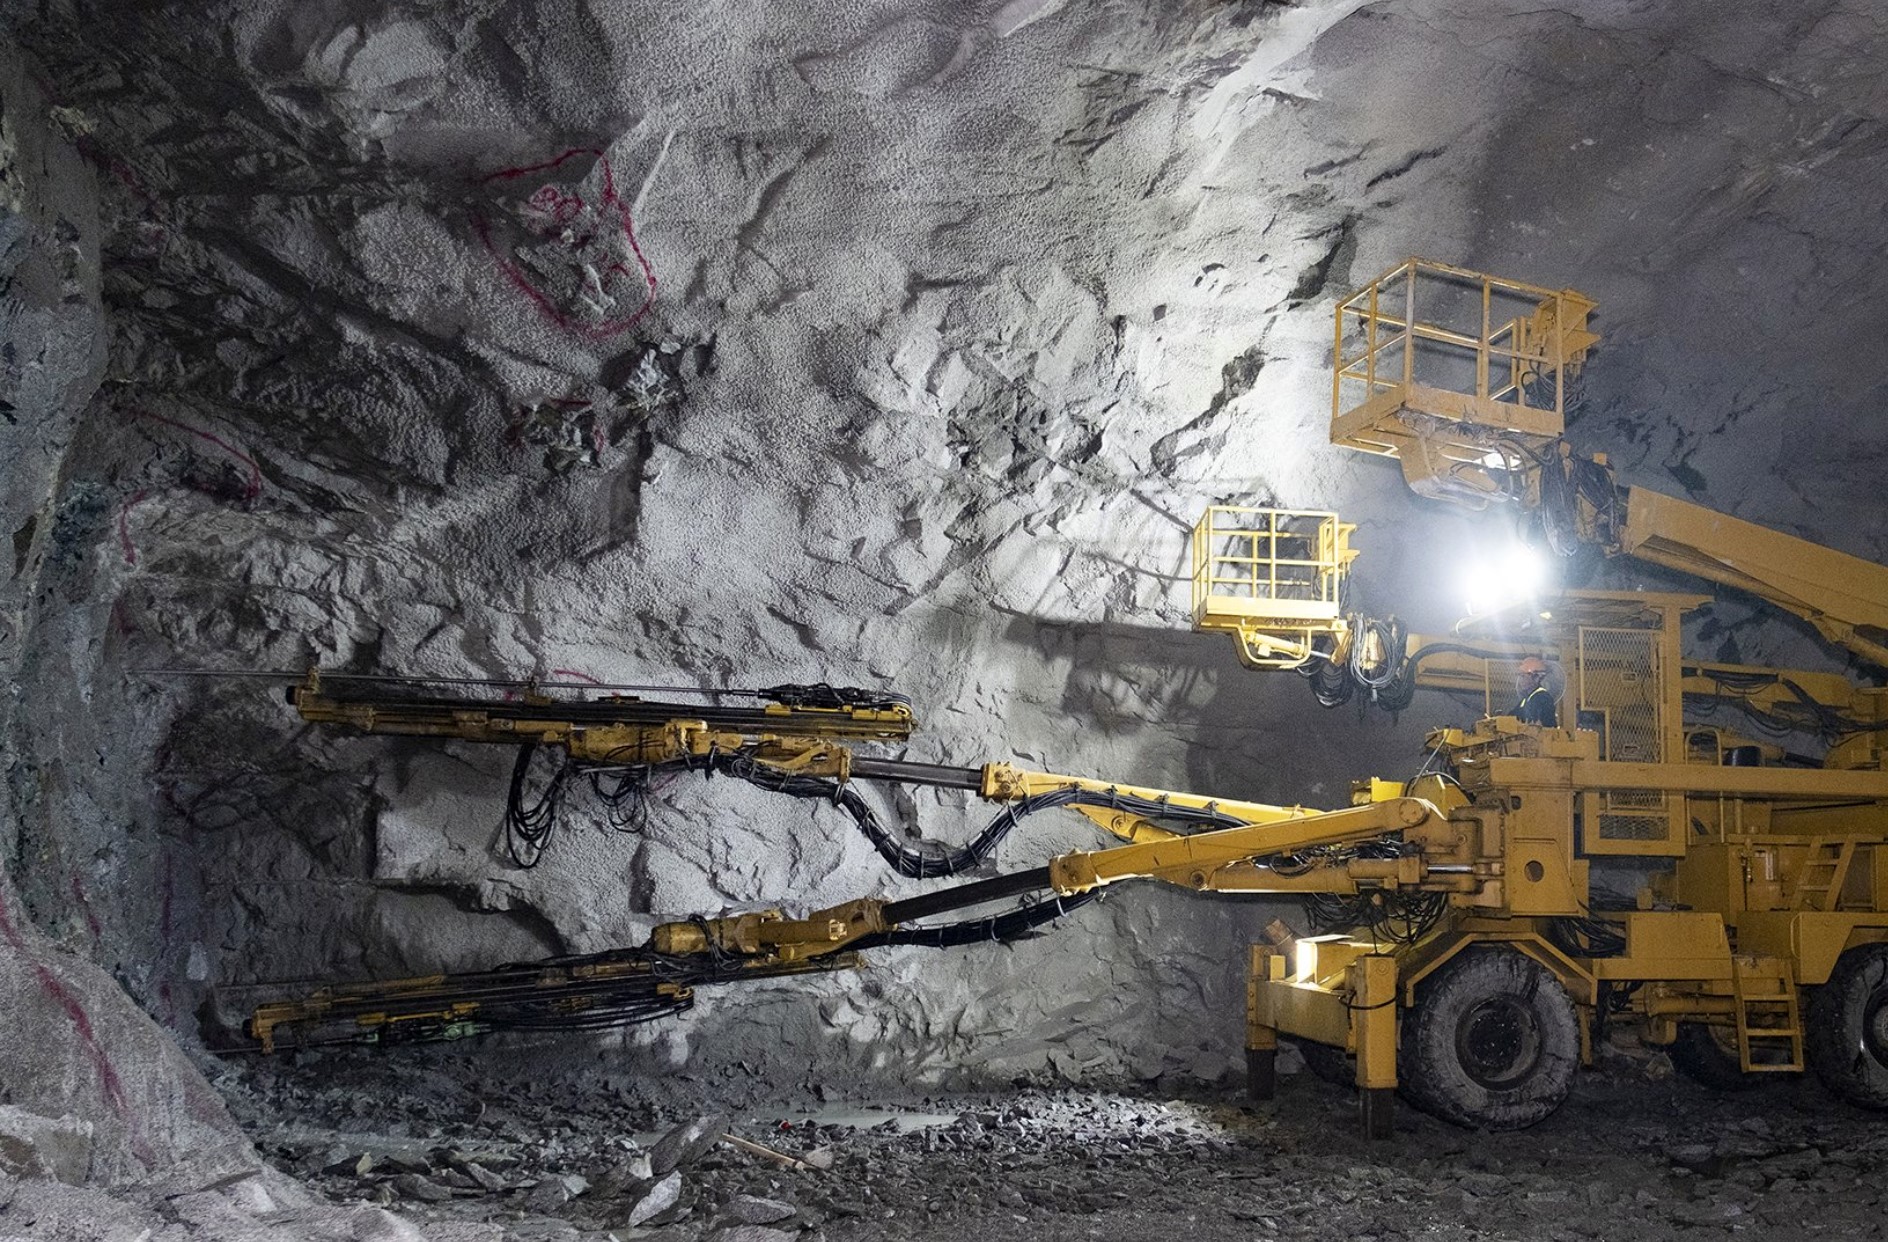 Hạng mục hầm Núi Vung, hiện có hơn 300 công nhân và kỹ thuật đang thực hiện thi công song song hai ống hầm, tổng số mét hầm đào được đến hiện tại khoảng 800 mét.